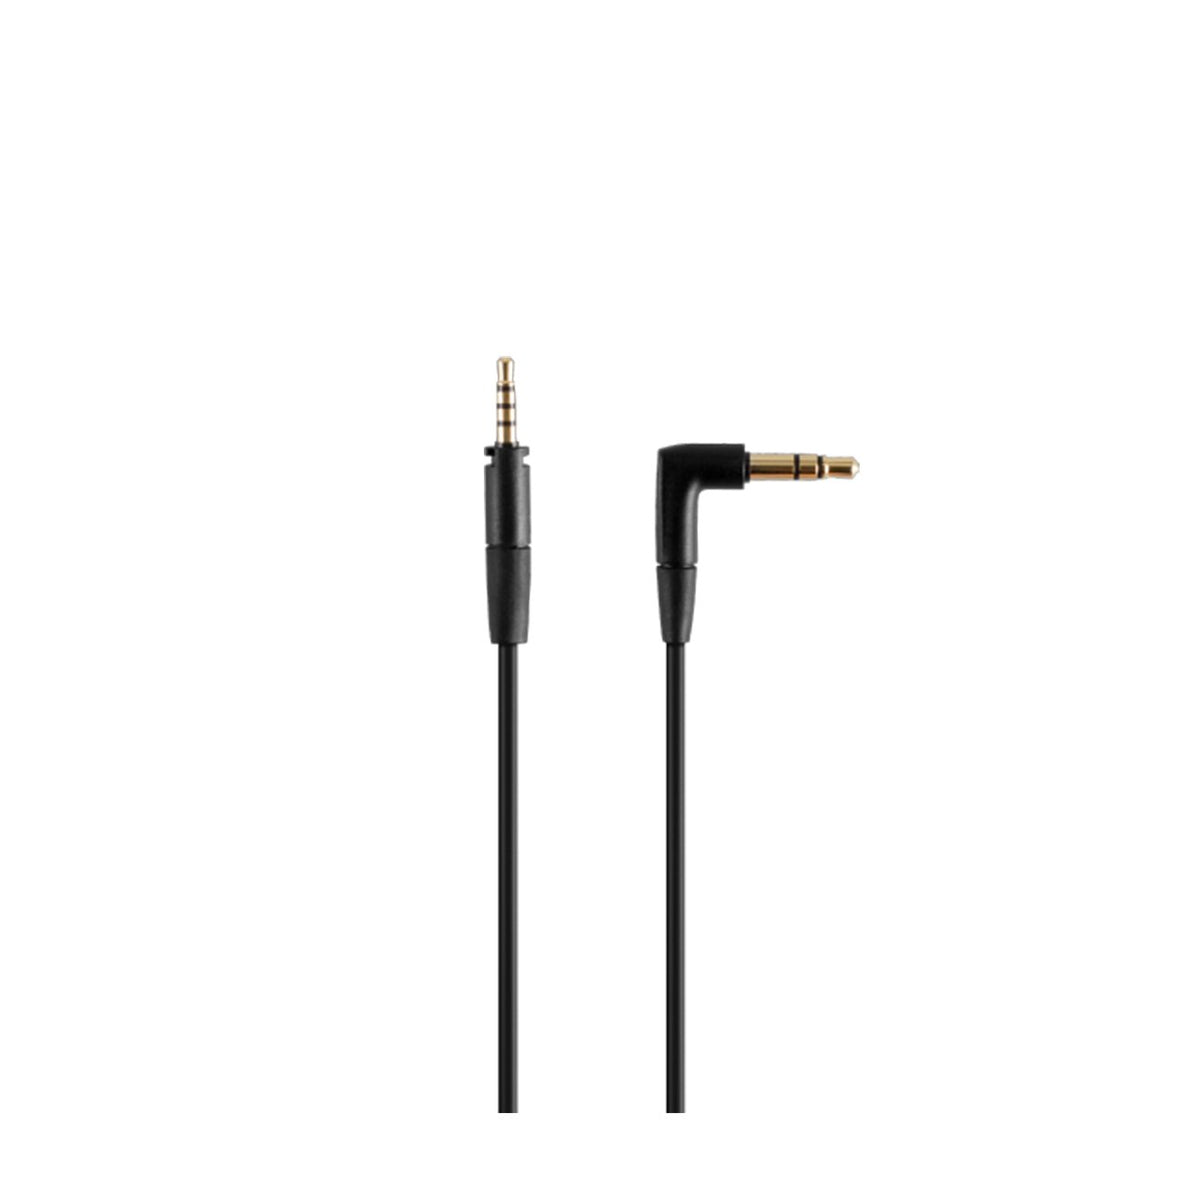 Cascos inalámbricos Bluetooth 450BT. Incluyen cable jack 3,5mm.